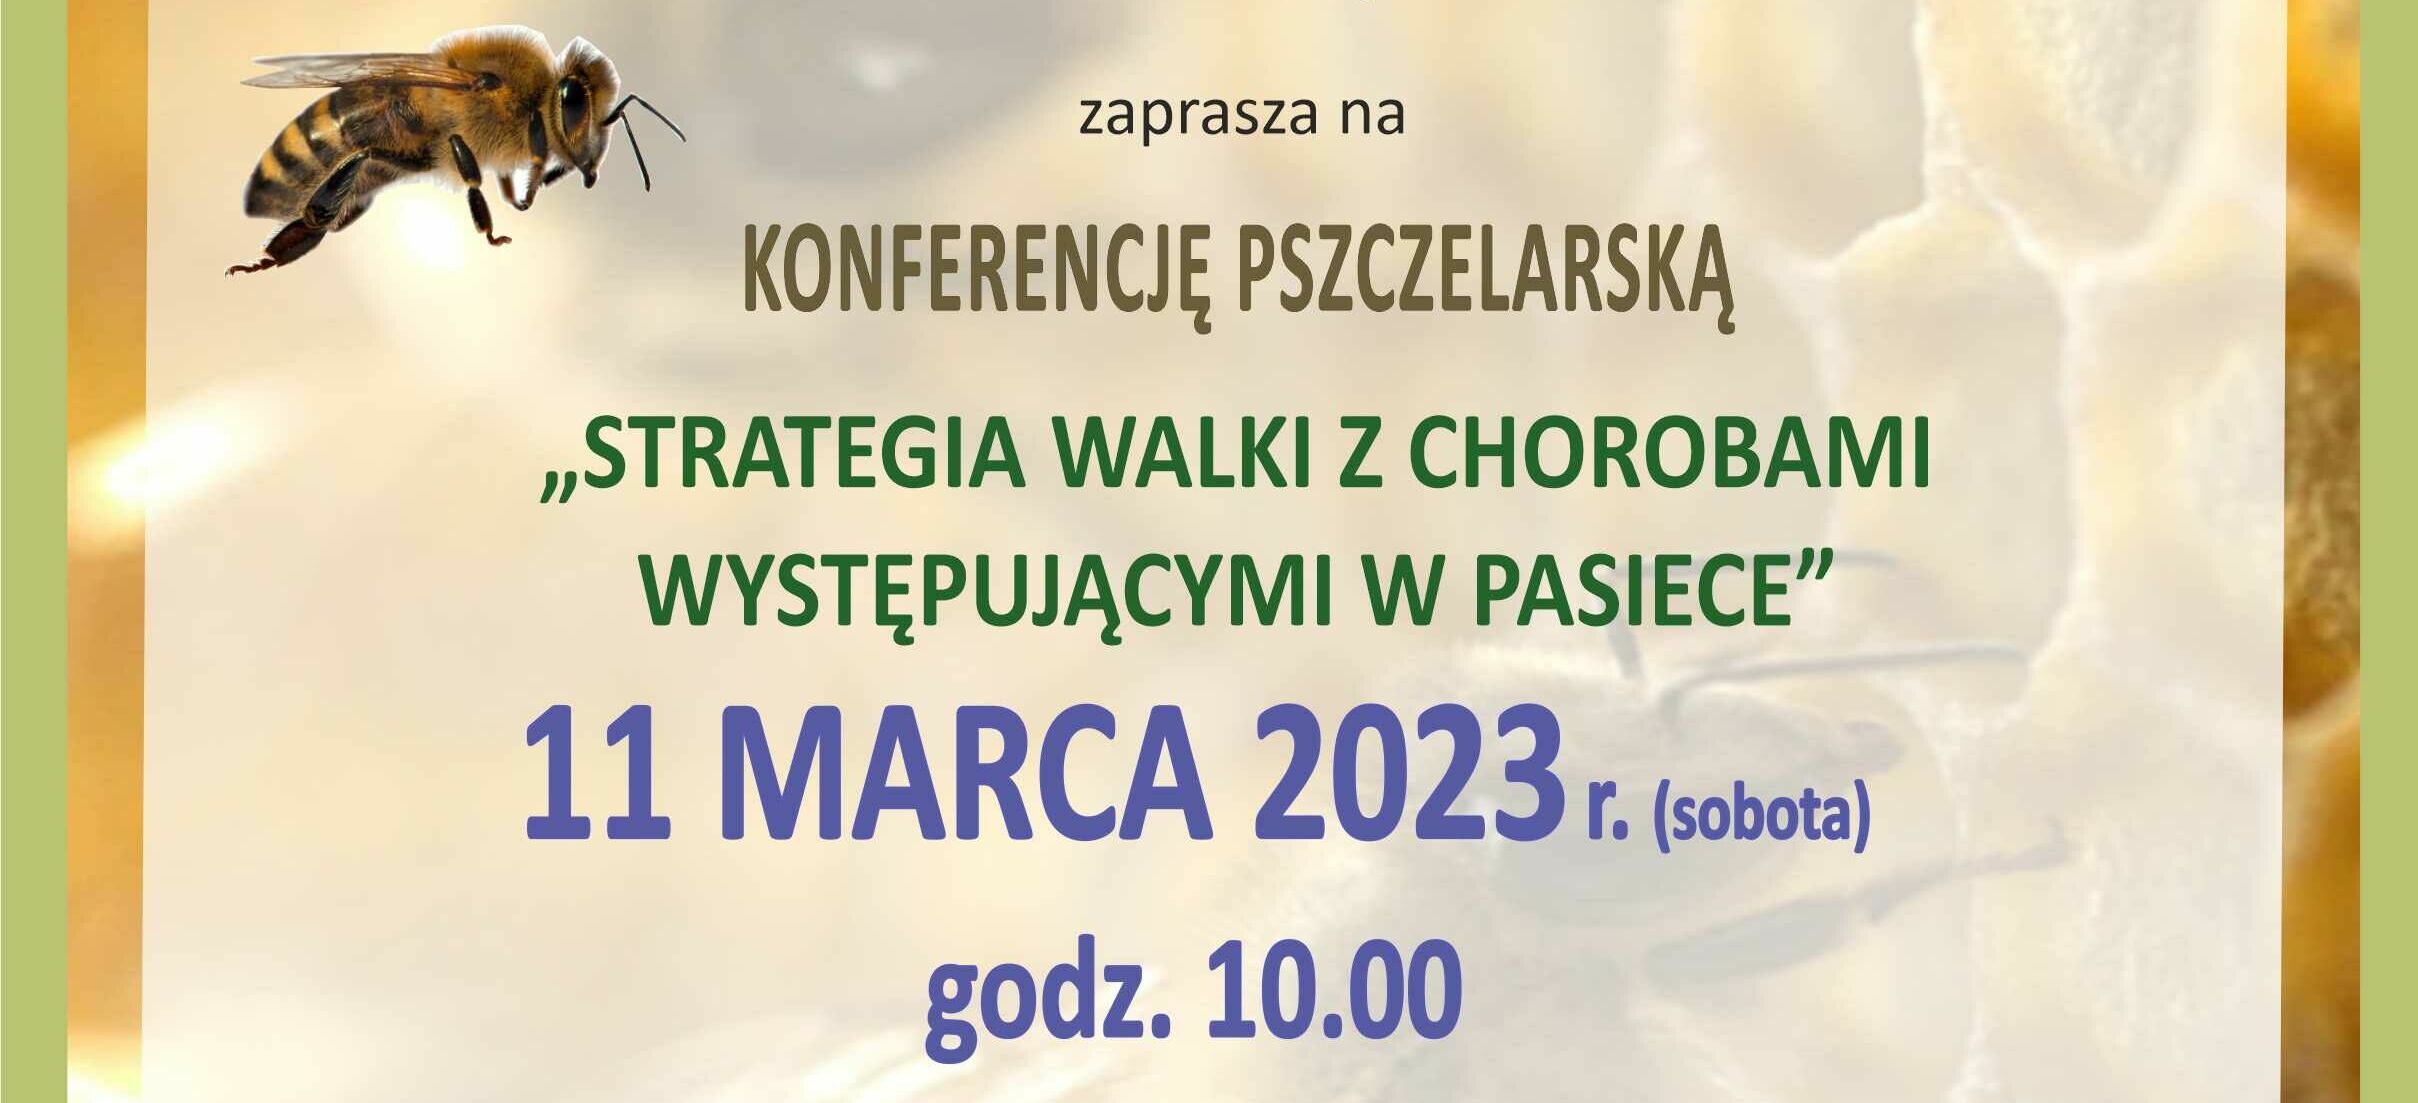  Konferencja Pszczelarska "STRATEGIA WALKI Z CHOROBAMI WYSTĘPUJĄCYMI W PASIECE"